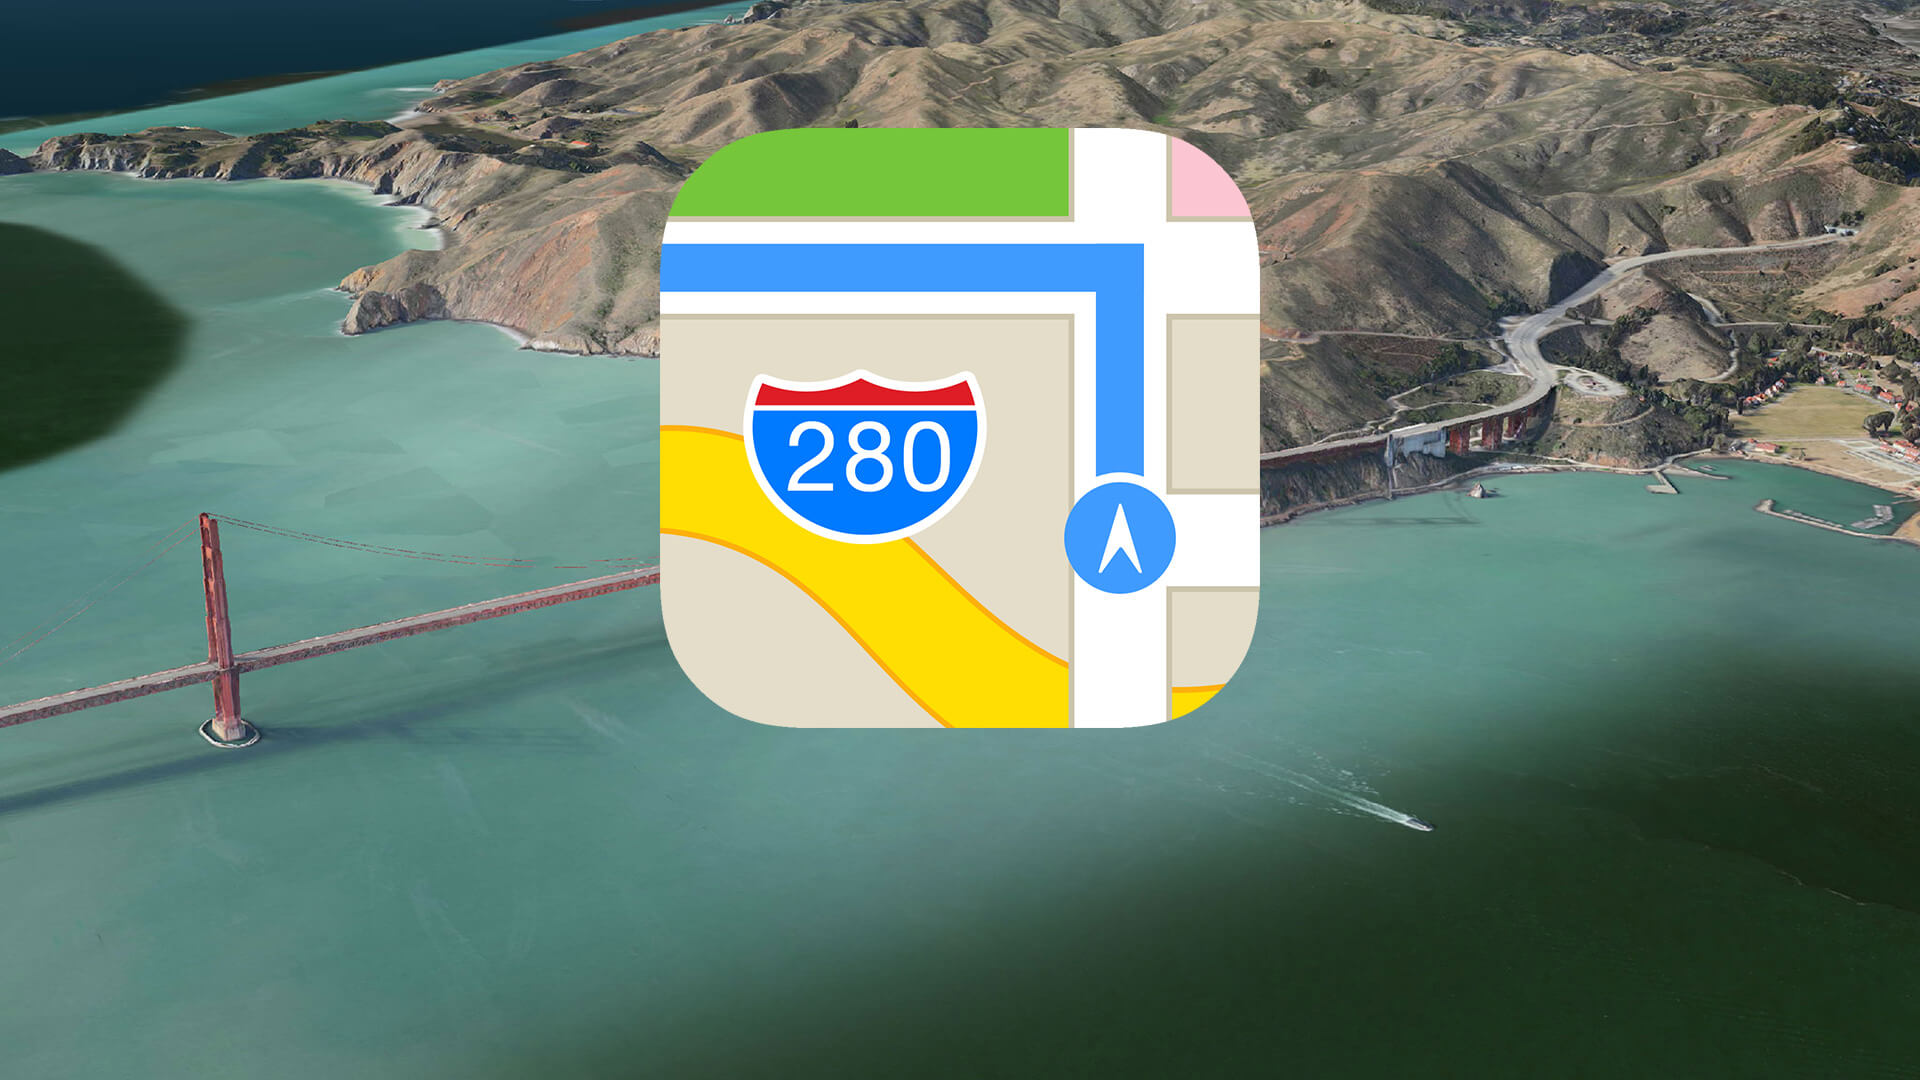 Apple sử dụng drone để cải thiện ứng dụng bản đồ, quyết tâm hạ bệ Google Maps